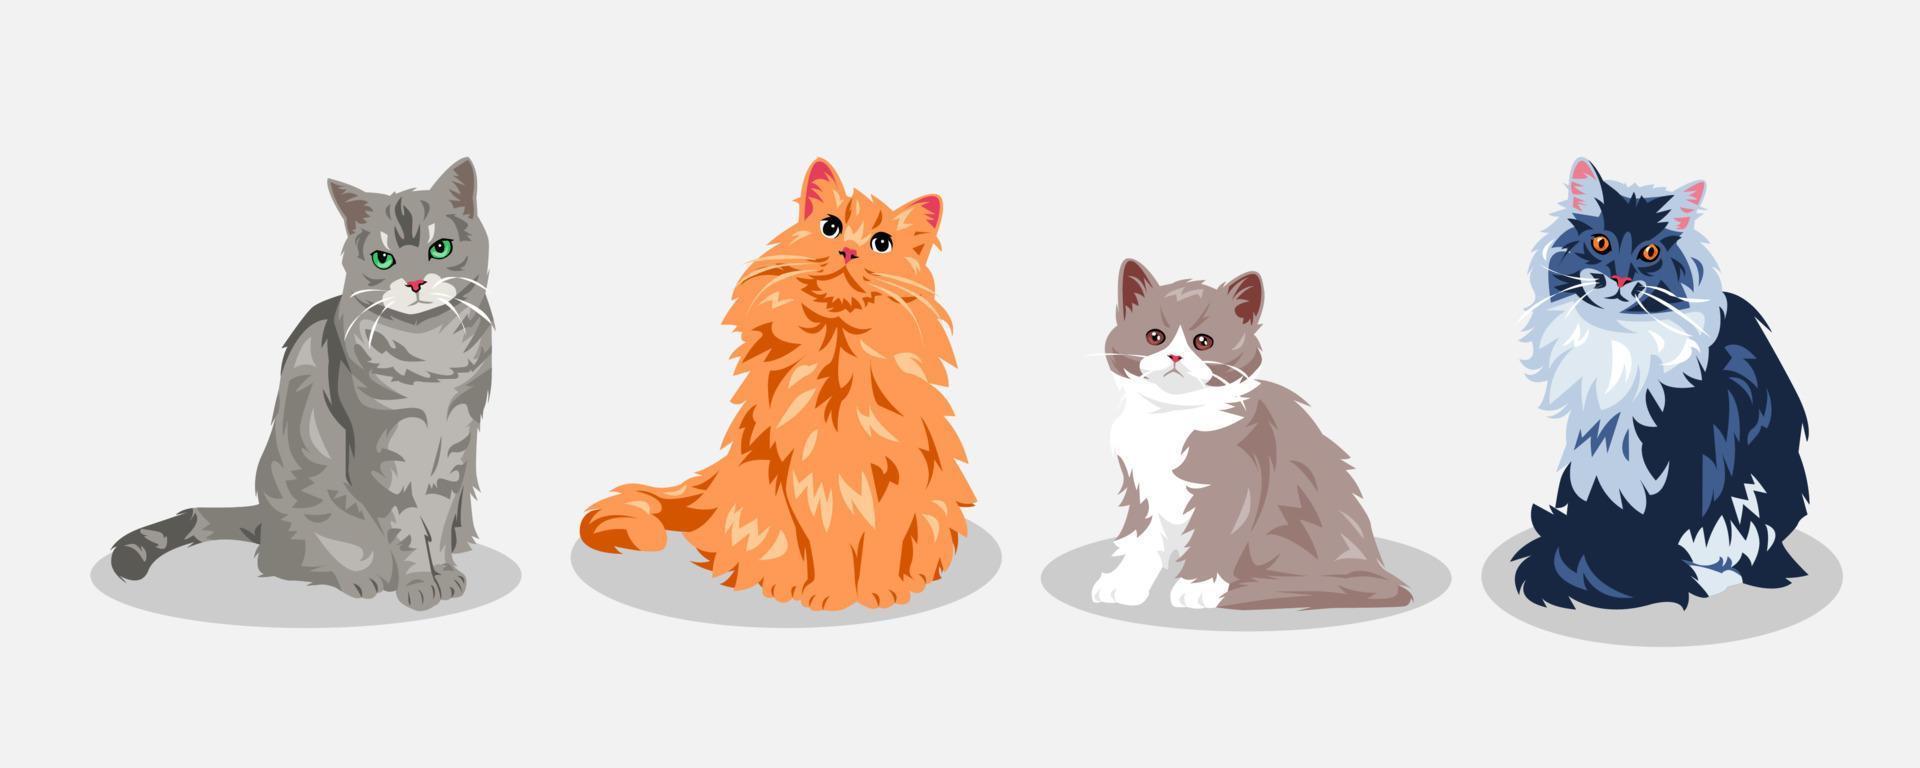 uppsättning av söt katter med annorlunda typer, storlek, gester, uttryck, färger, former. vektor illustration.